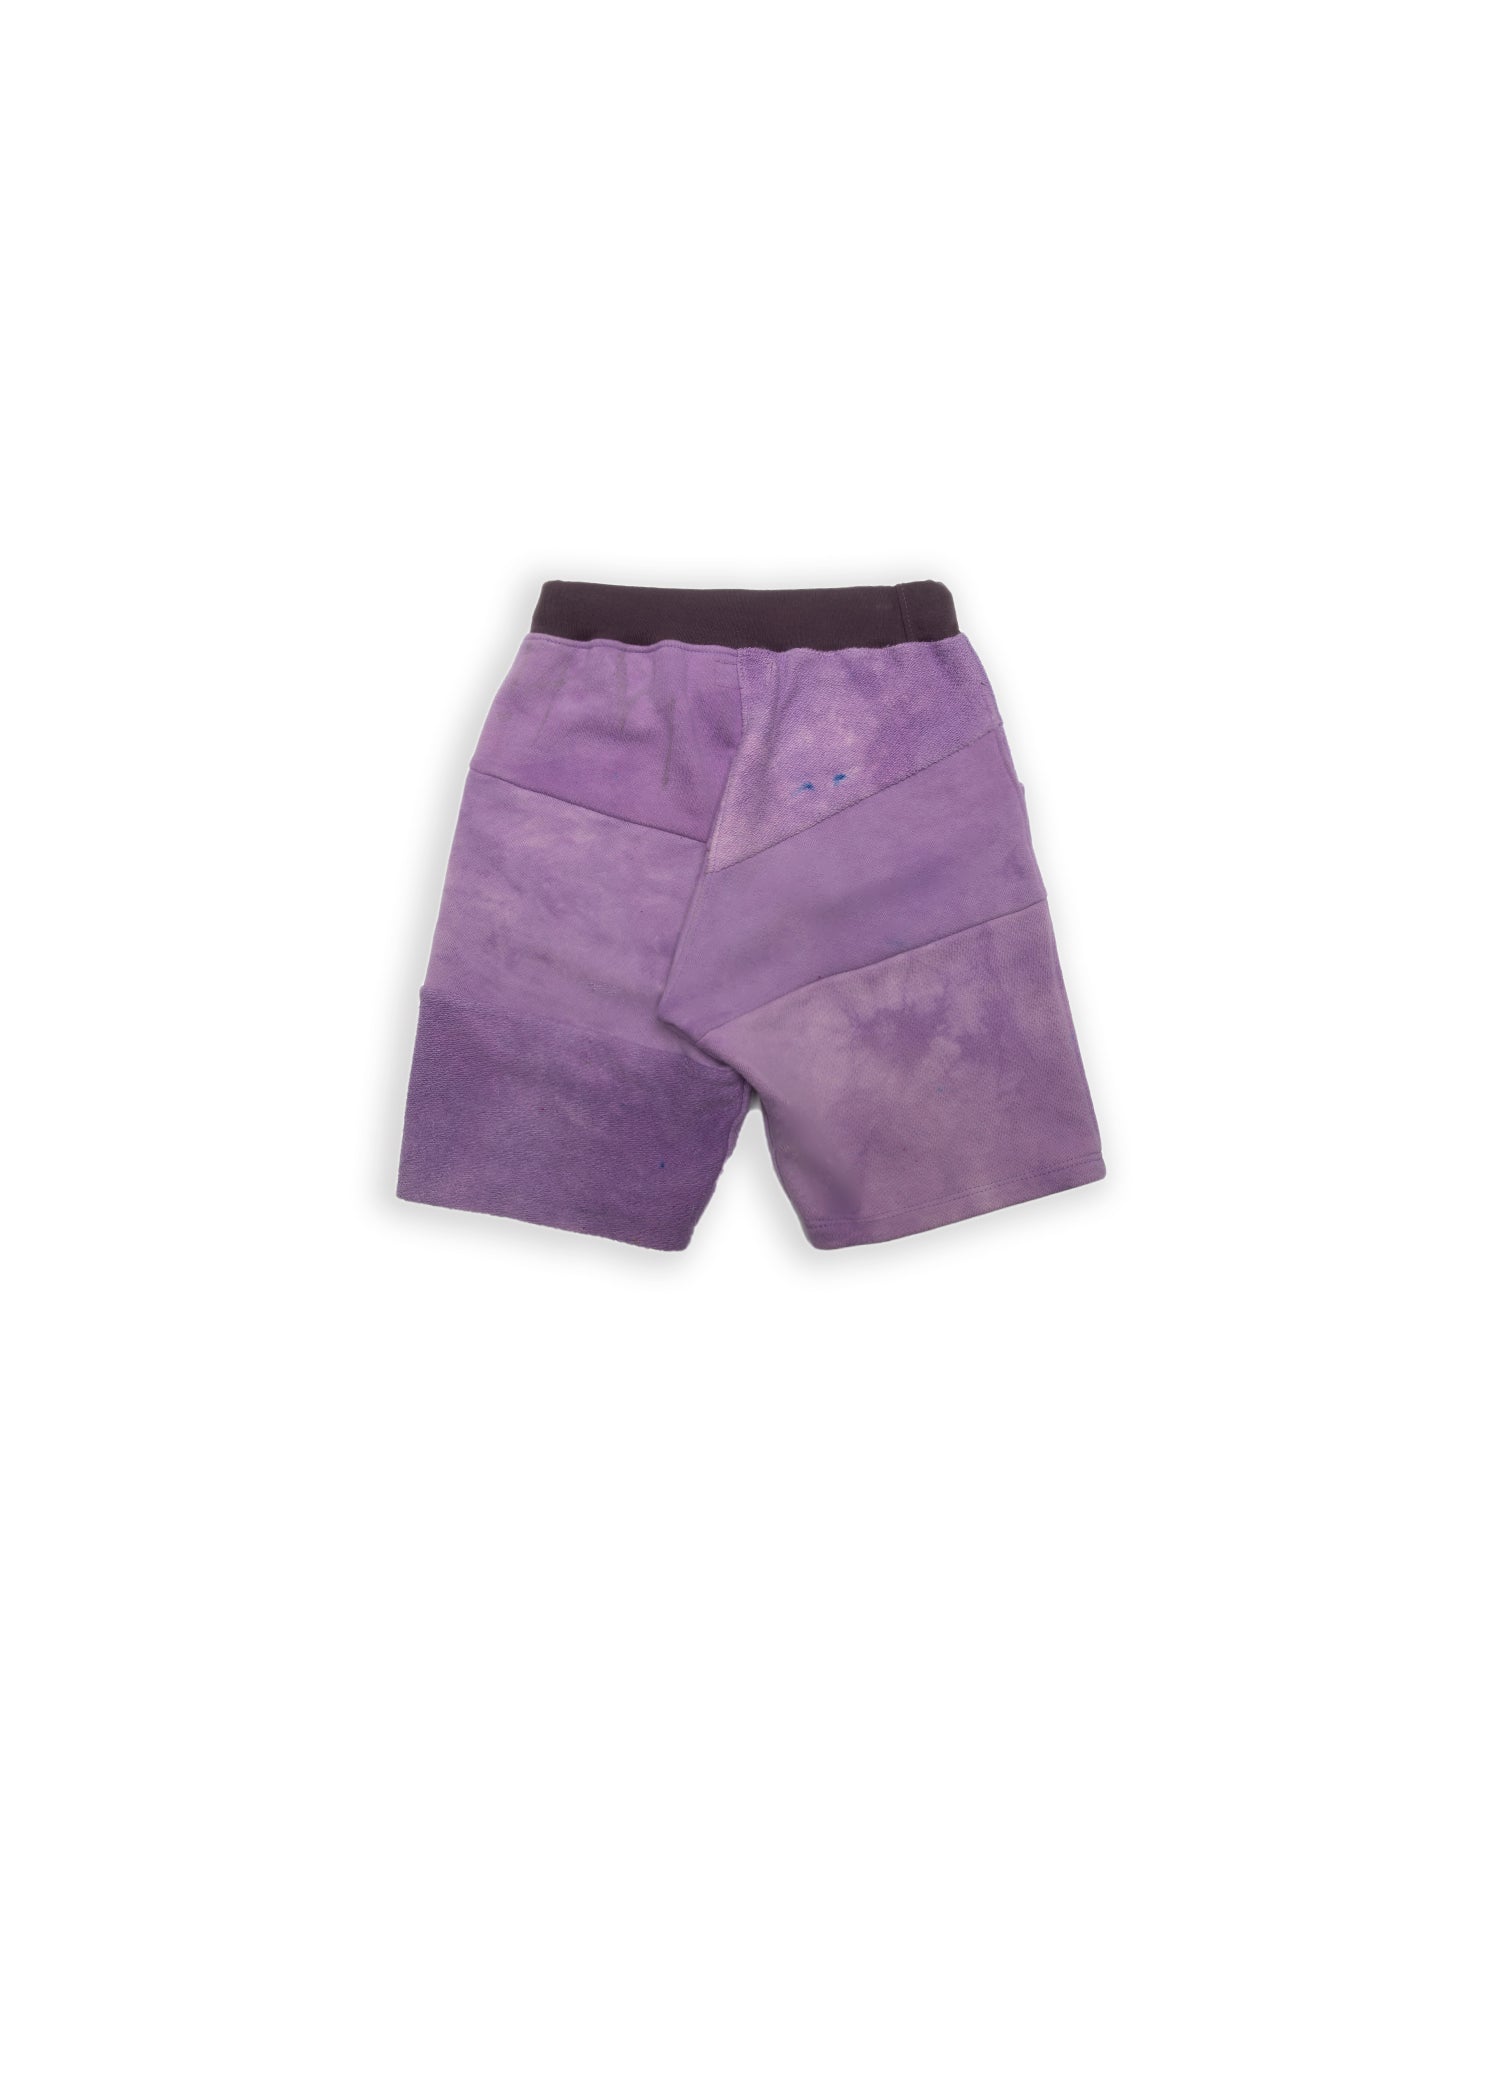 Lavender Women's Short